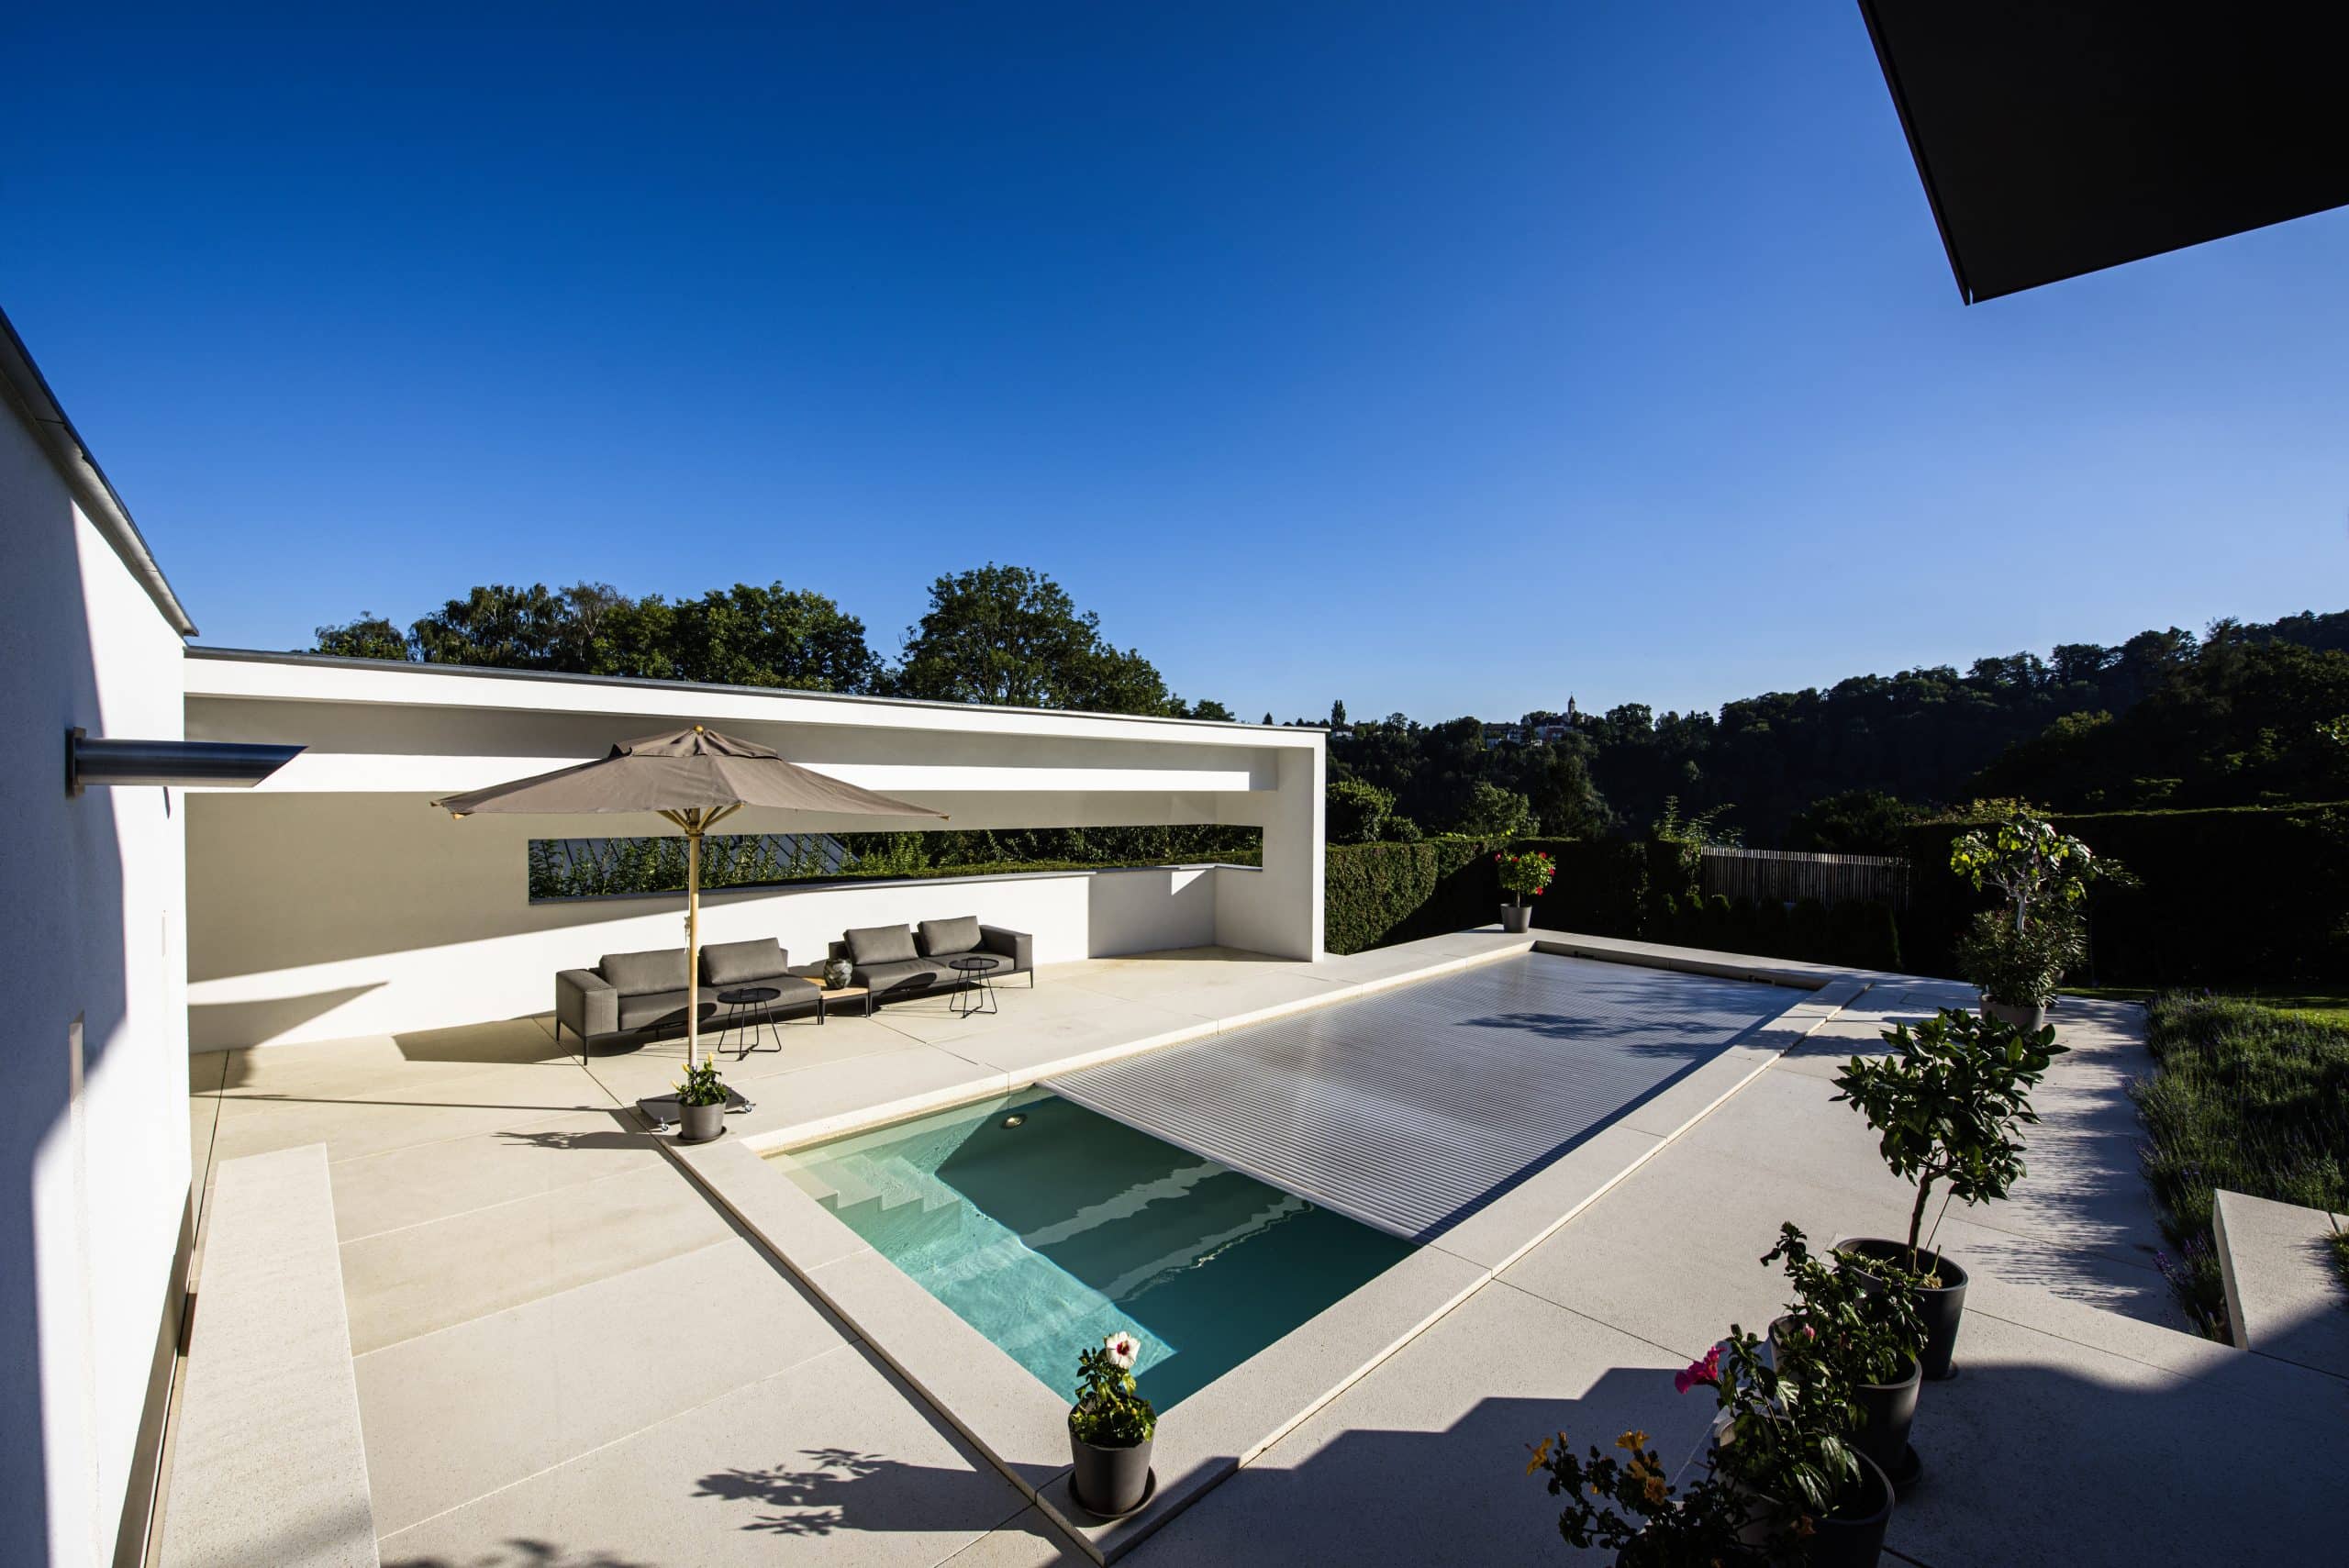 RUHA präsentiert eine Terrasse mit großen beigen Fliesen, einem Pool, einer Lounge und Bepflanzung.